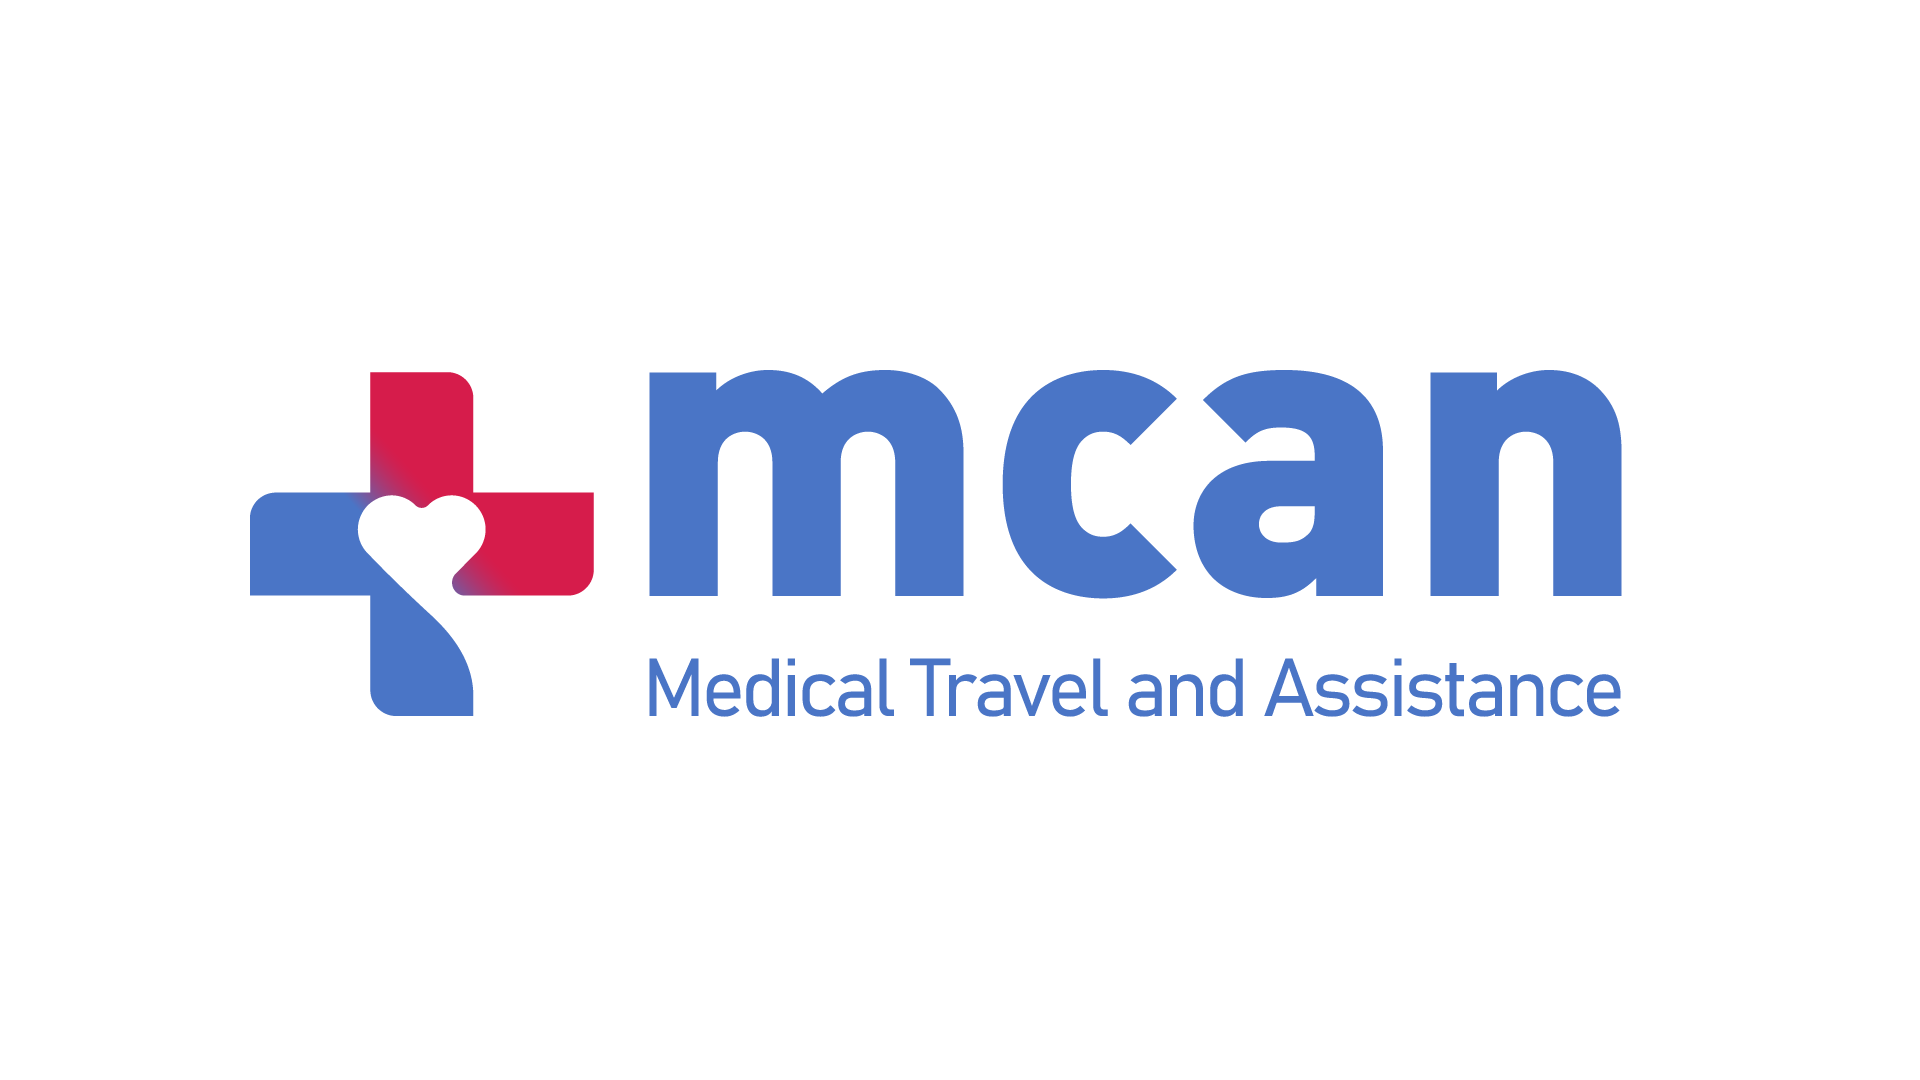 MCAN Sağlık Turizmi Asistans Ve Danışmanlık AŞ